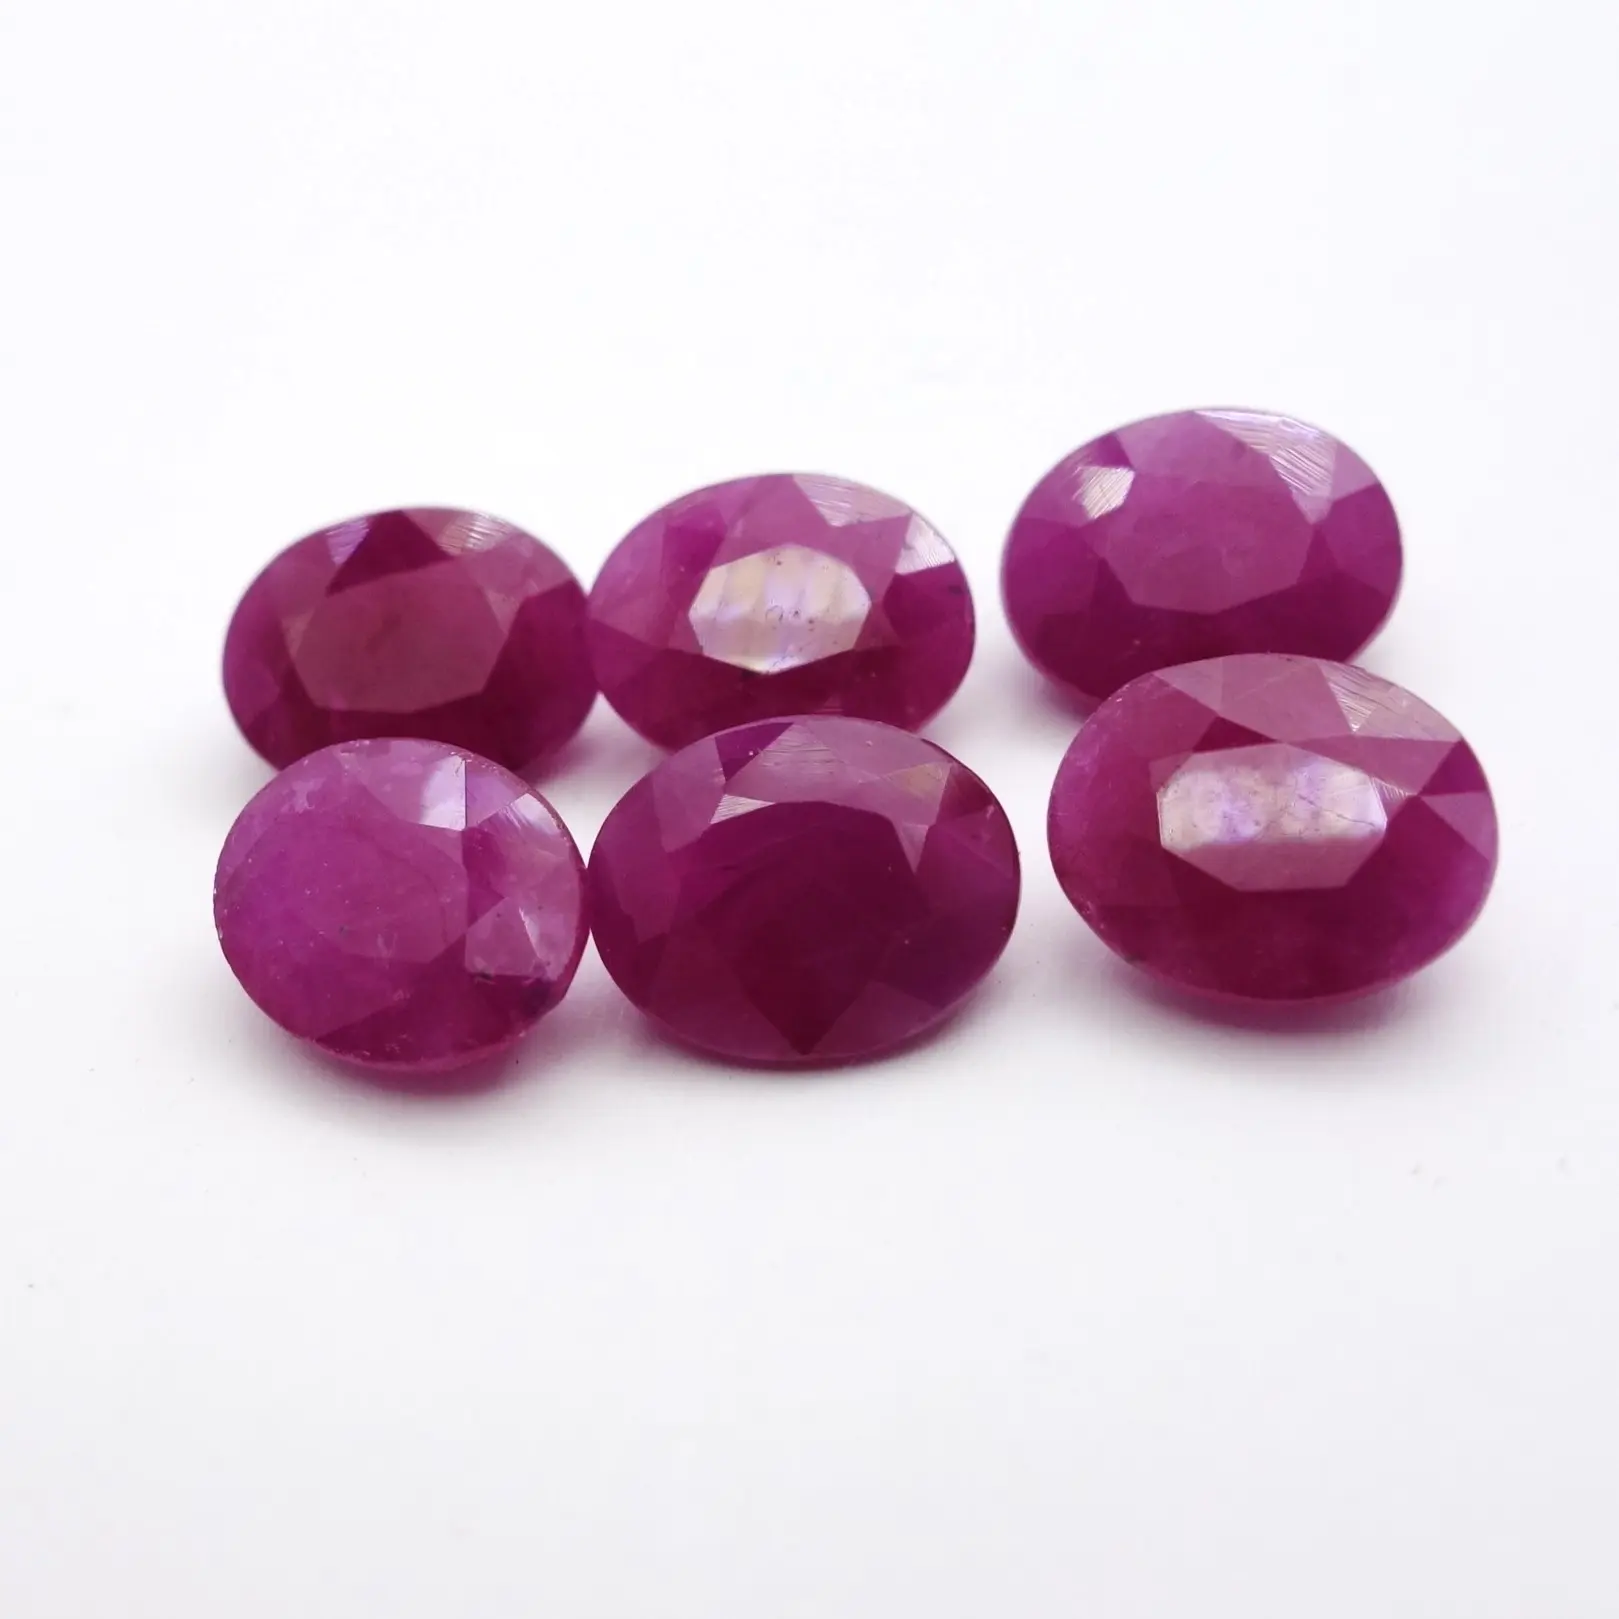 Rubino indiano naturale gemma sfaccettata ovale traslucida qualità tutte le forme e dimensioni tagliate su ordini personalizzati a prezzi all'ingrosso In a